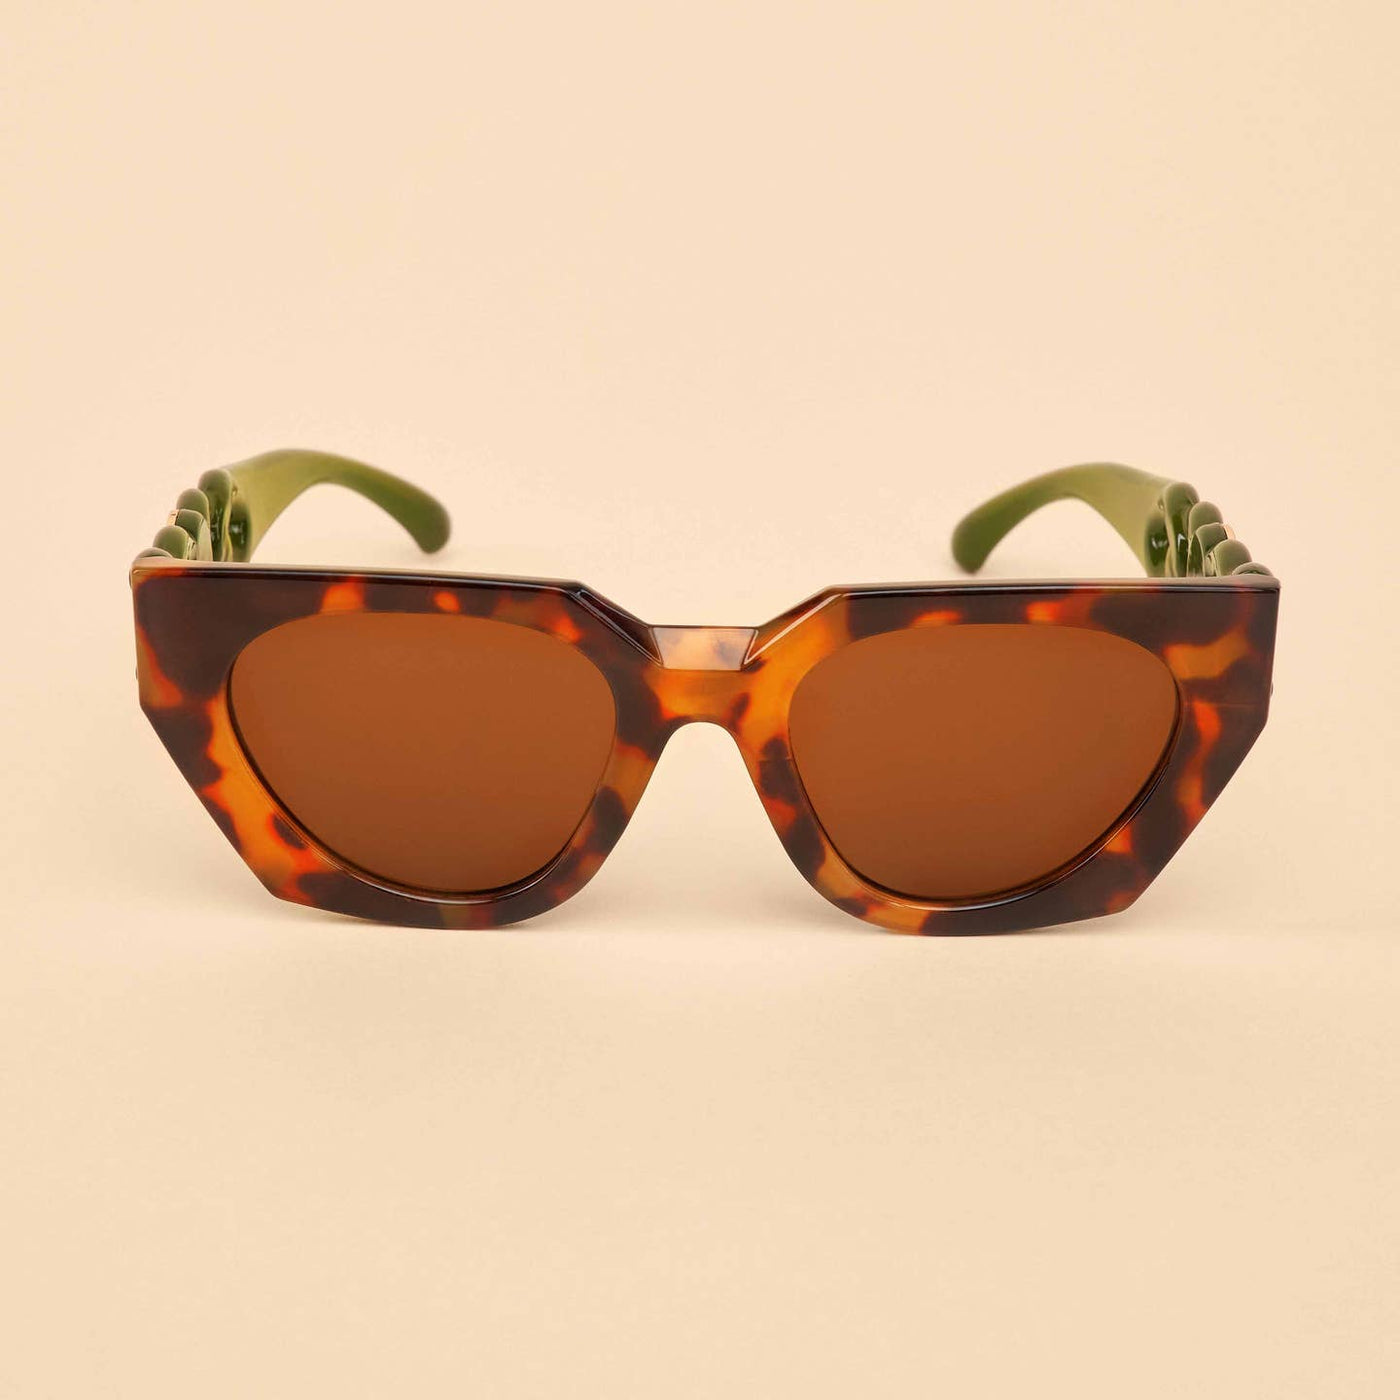 Zelia Luxe Sunglasses - Tortoiseshell/Olive